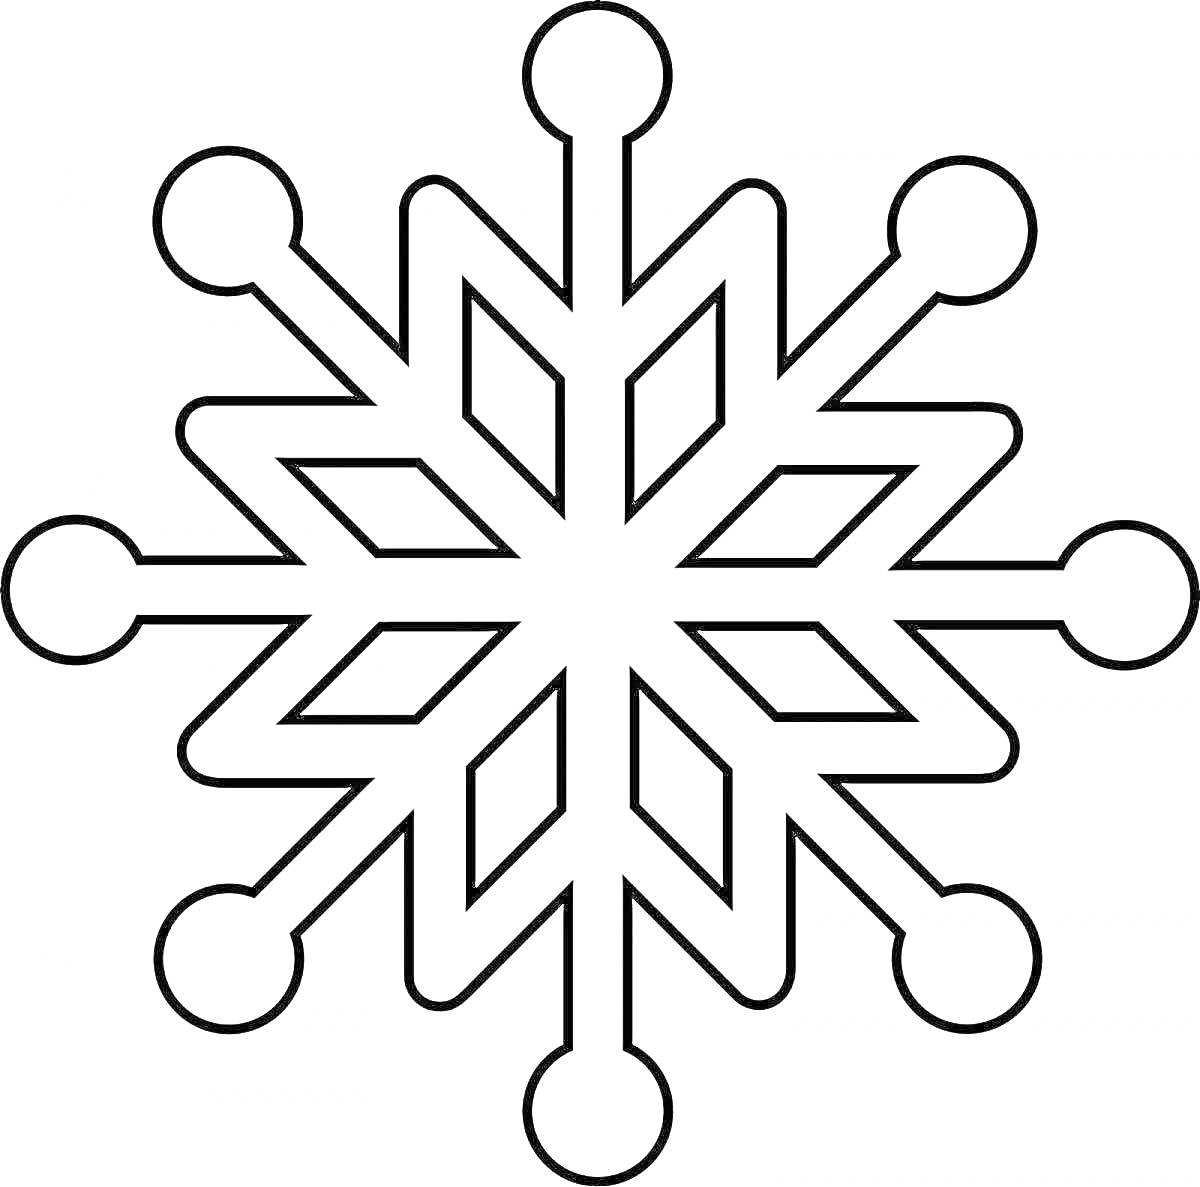 Раскраска Снежинка с шести наконечниками и круглыми концами